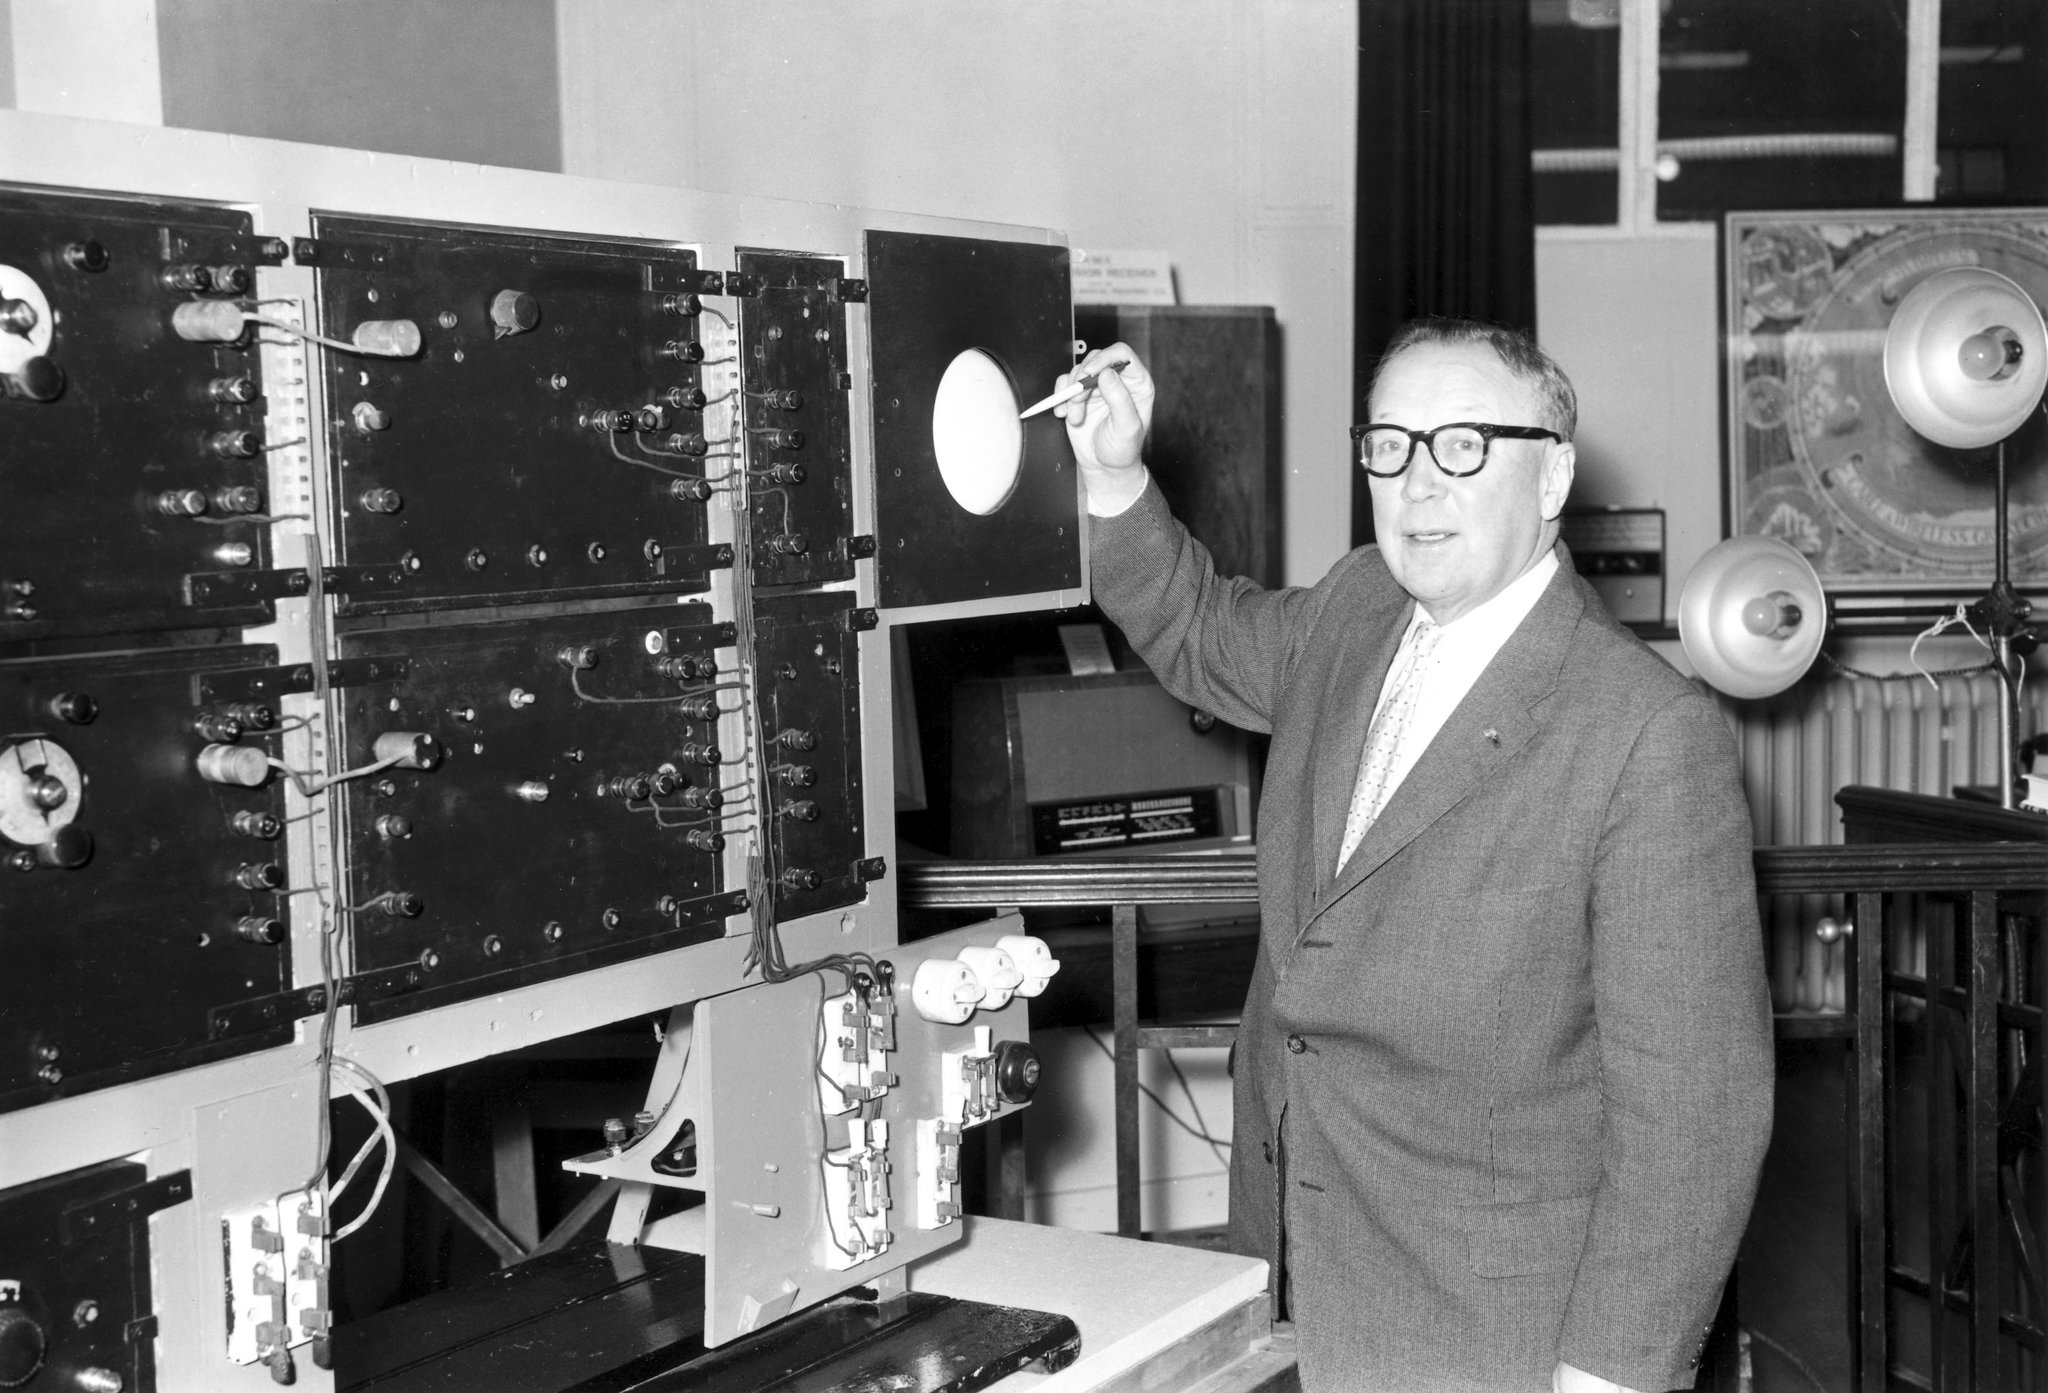 Nhà phát minh Robert Watson-Watt đứng bên cạnh hệ thống radar giúp phát hiện máy bay địch. Ảnh: Science Museum.